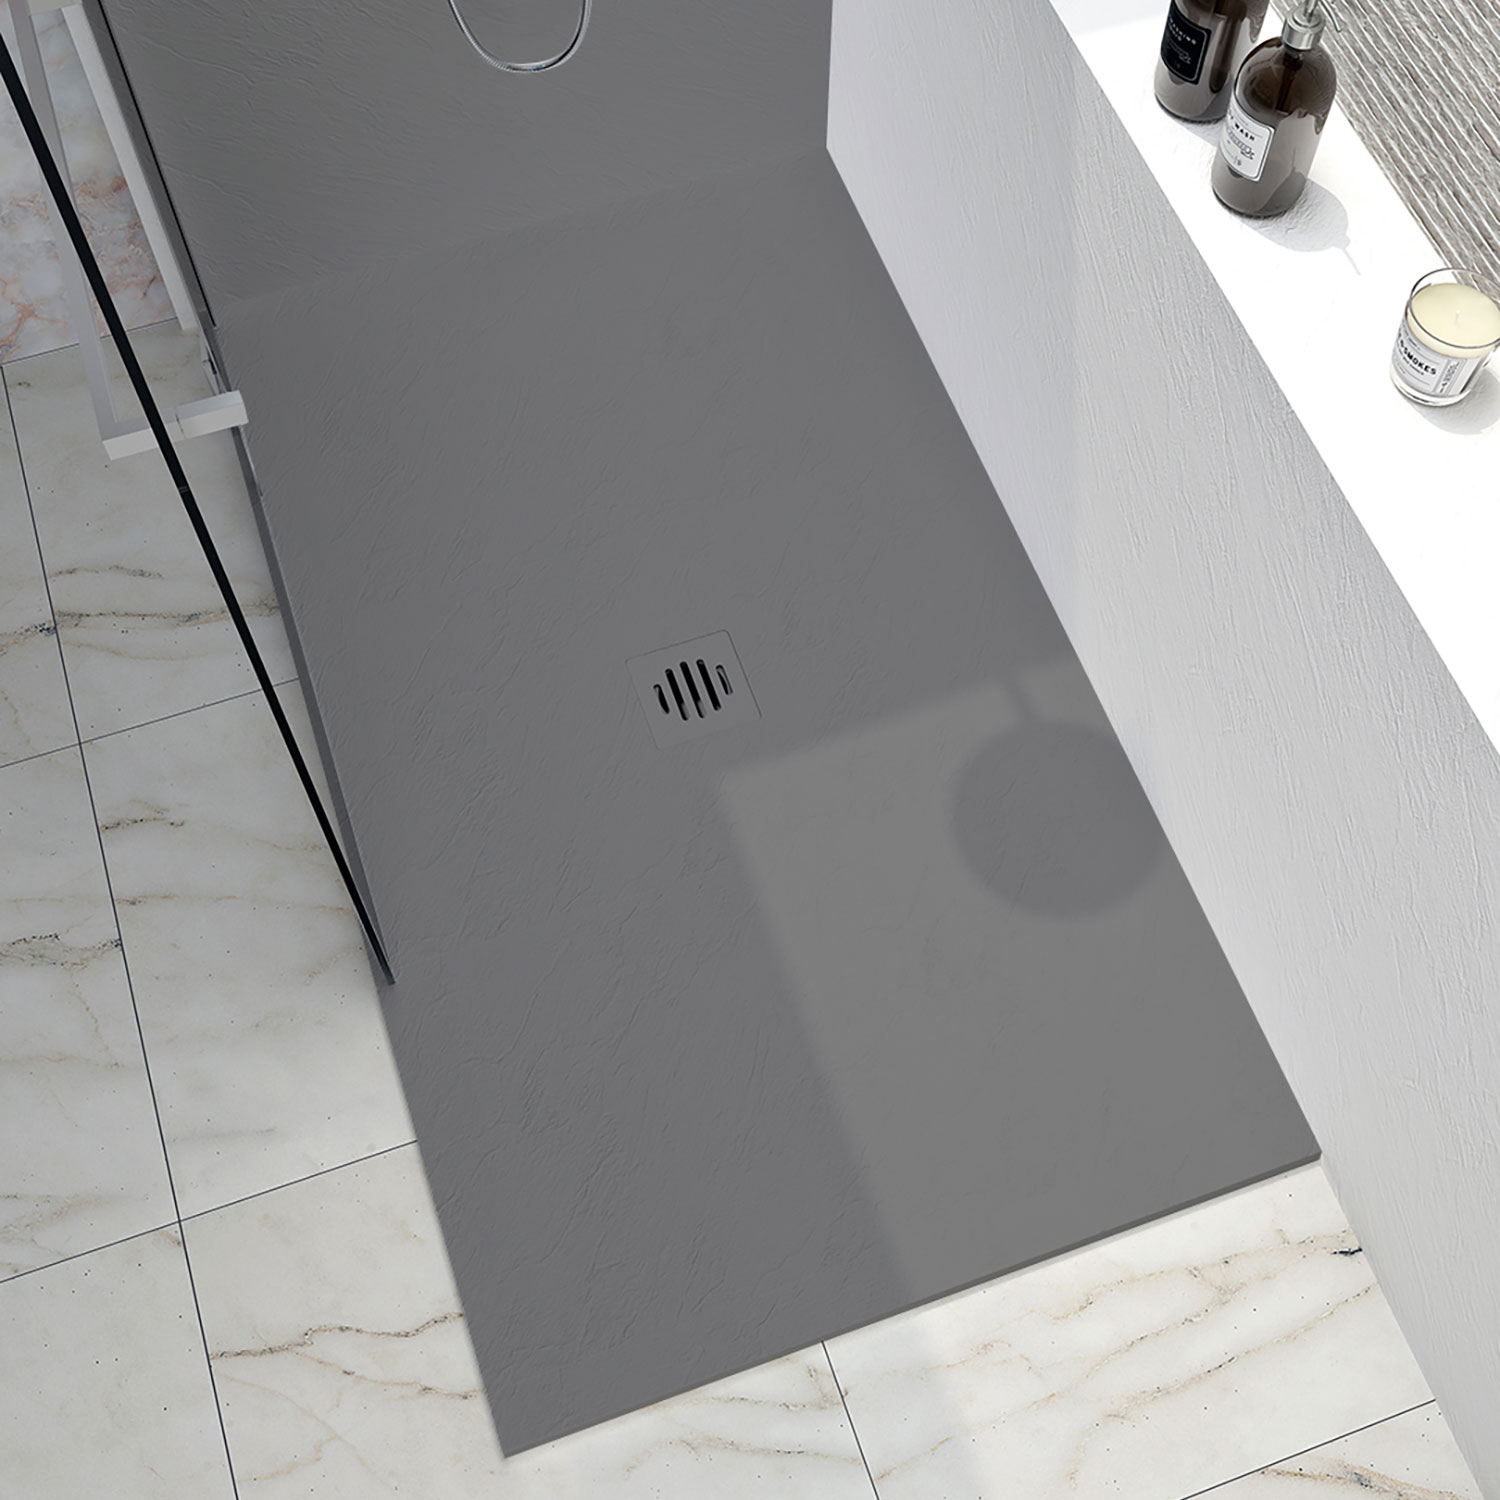 Shower base Slate 54 x 36, tile flange not installed, in concrete grey